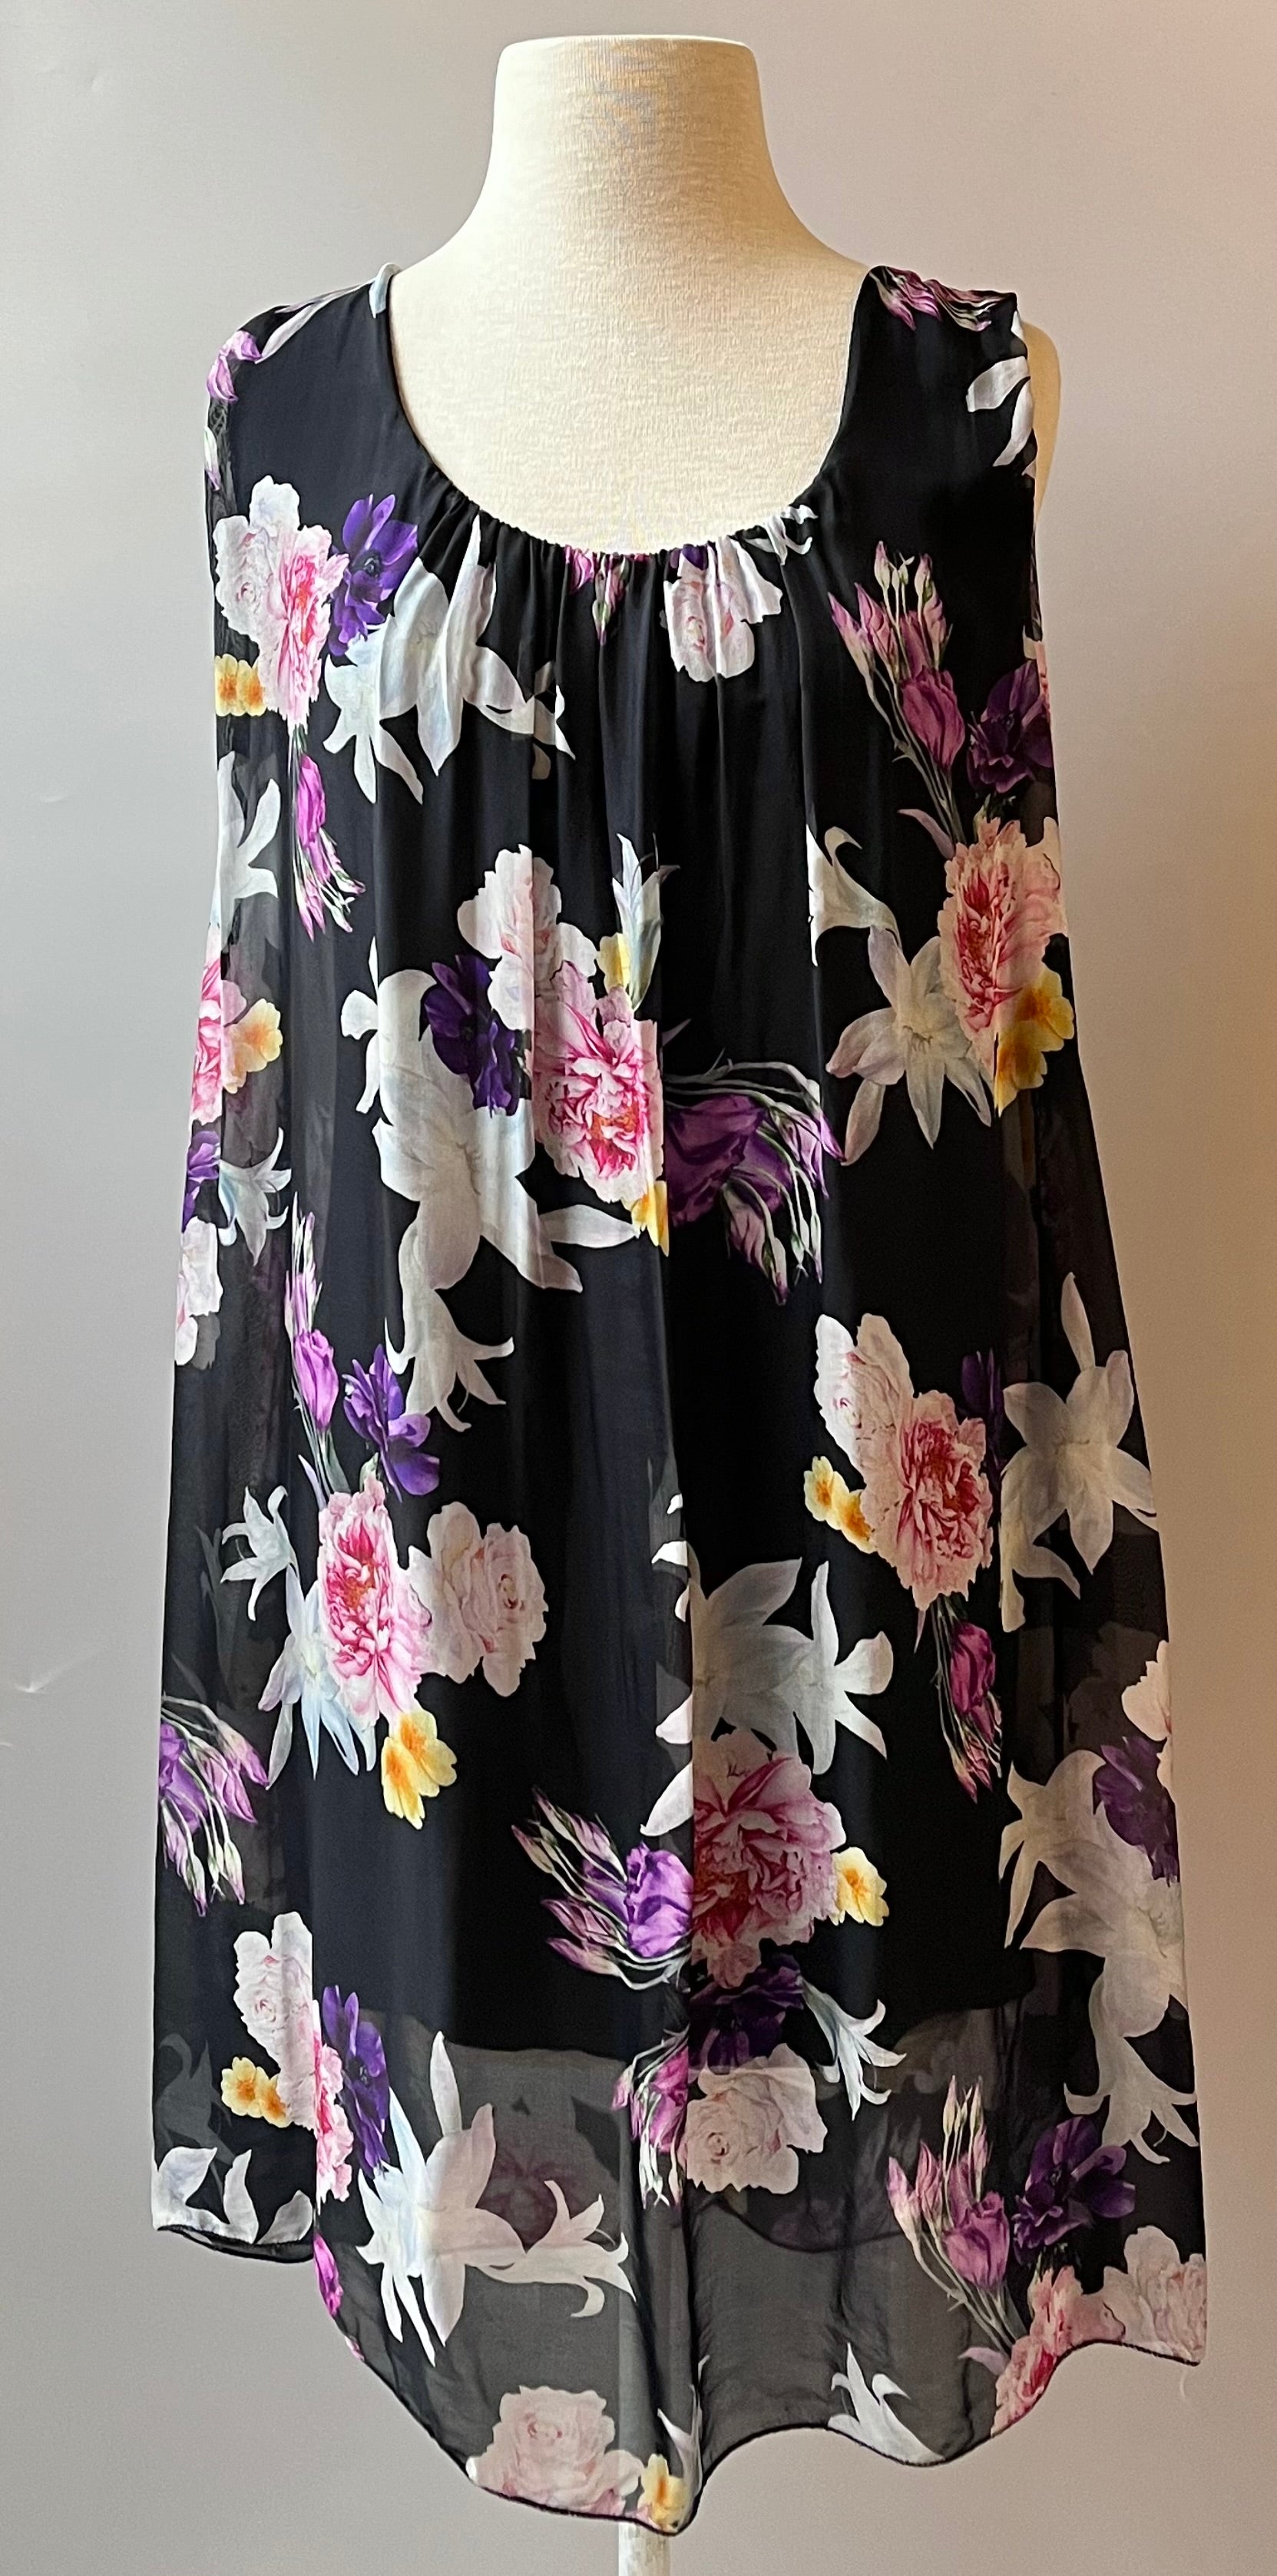 Multicolor Floral Sheath Dress, Size: M